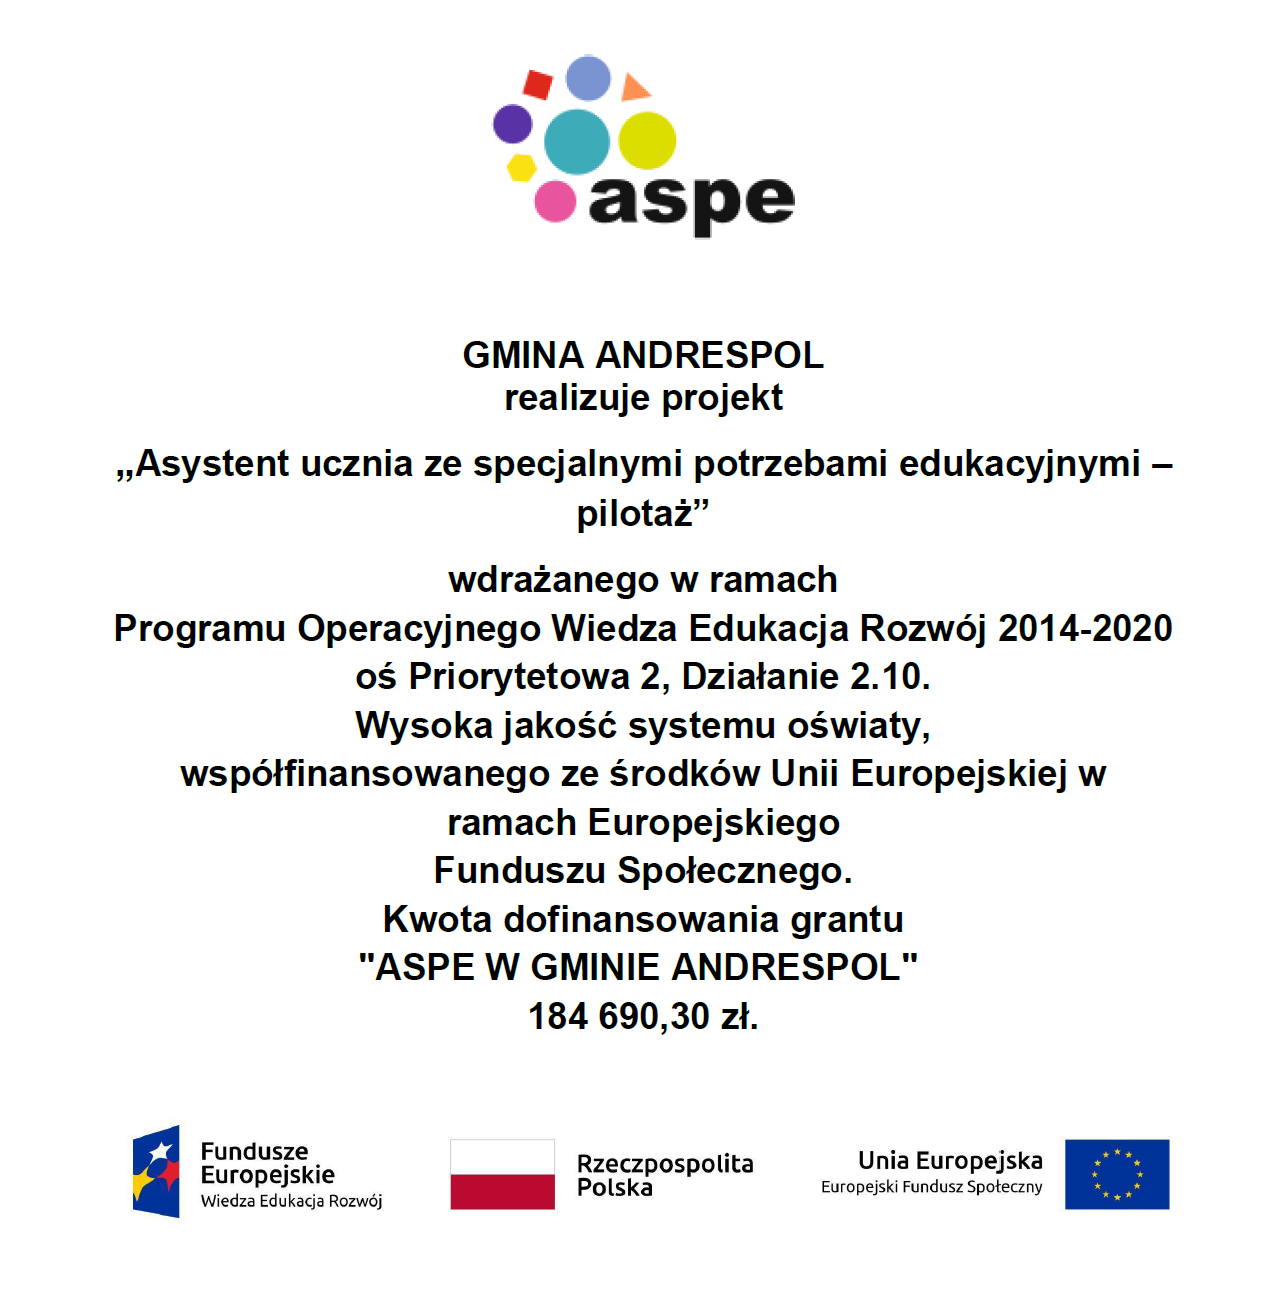 GMINA ANDRESPOL realizuje projekt „Asystent ucznia ze specjalnymi potrzebami edukacyjnymi – pilotaż” wdrażanego w ramach Programu Operacyjnego Wiedza Edukacja Rozwój 2014-2020 oś Priorytetowa 2, Działanie 2.10. Wysoka jakość systemu oświaty, współfinansowanego ze środków Unii Europejskiej w ramach Europejskiego Funduszu Społecznego. Kwota dofinansowania grantu "ASPE W GMINIE ANDRESPOL" 184 690,30 zł.